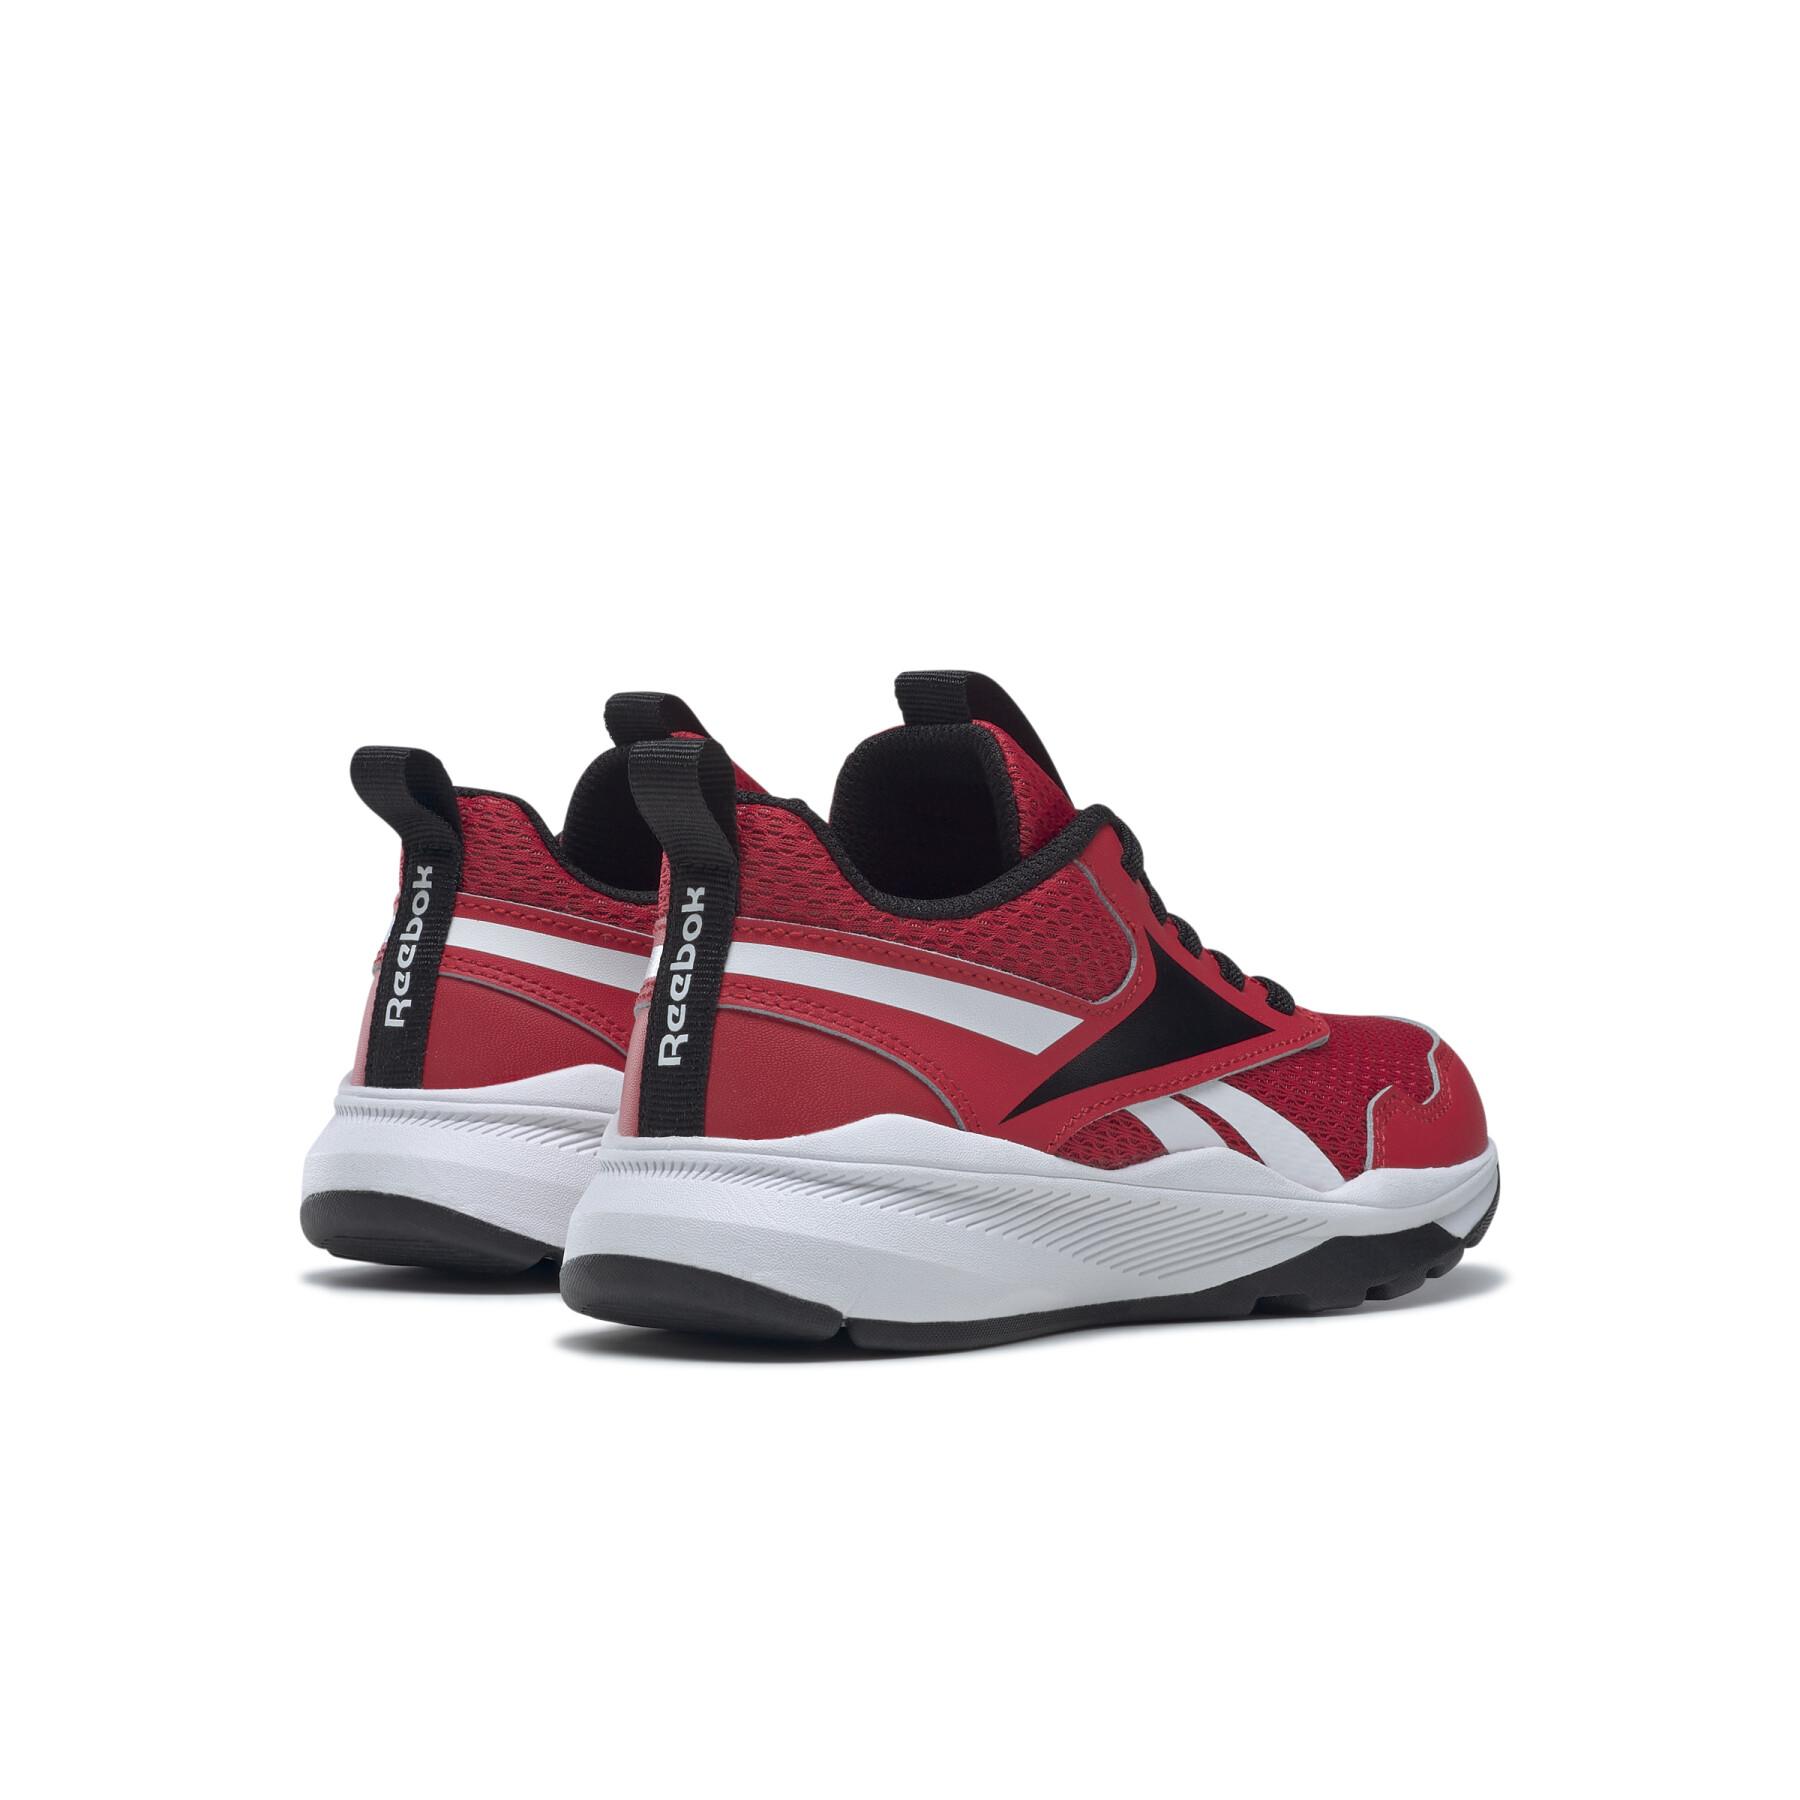 Children's running shoes Reebok Xt Sprinter 2 Alt